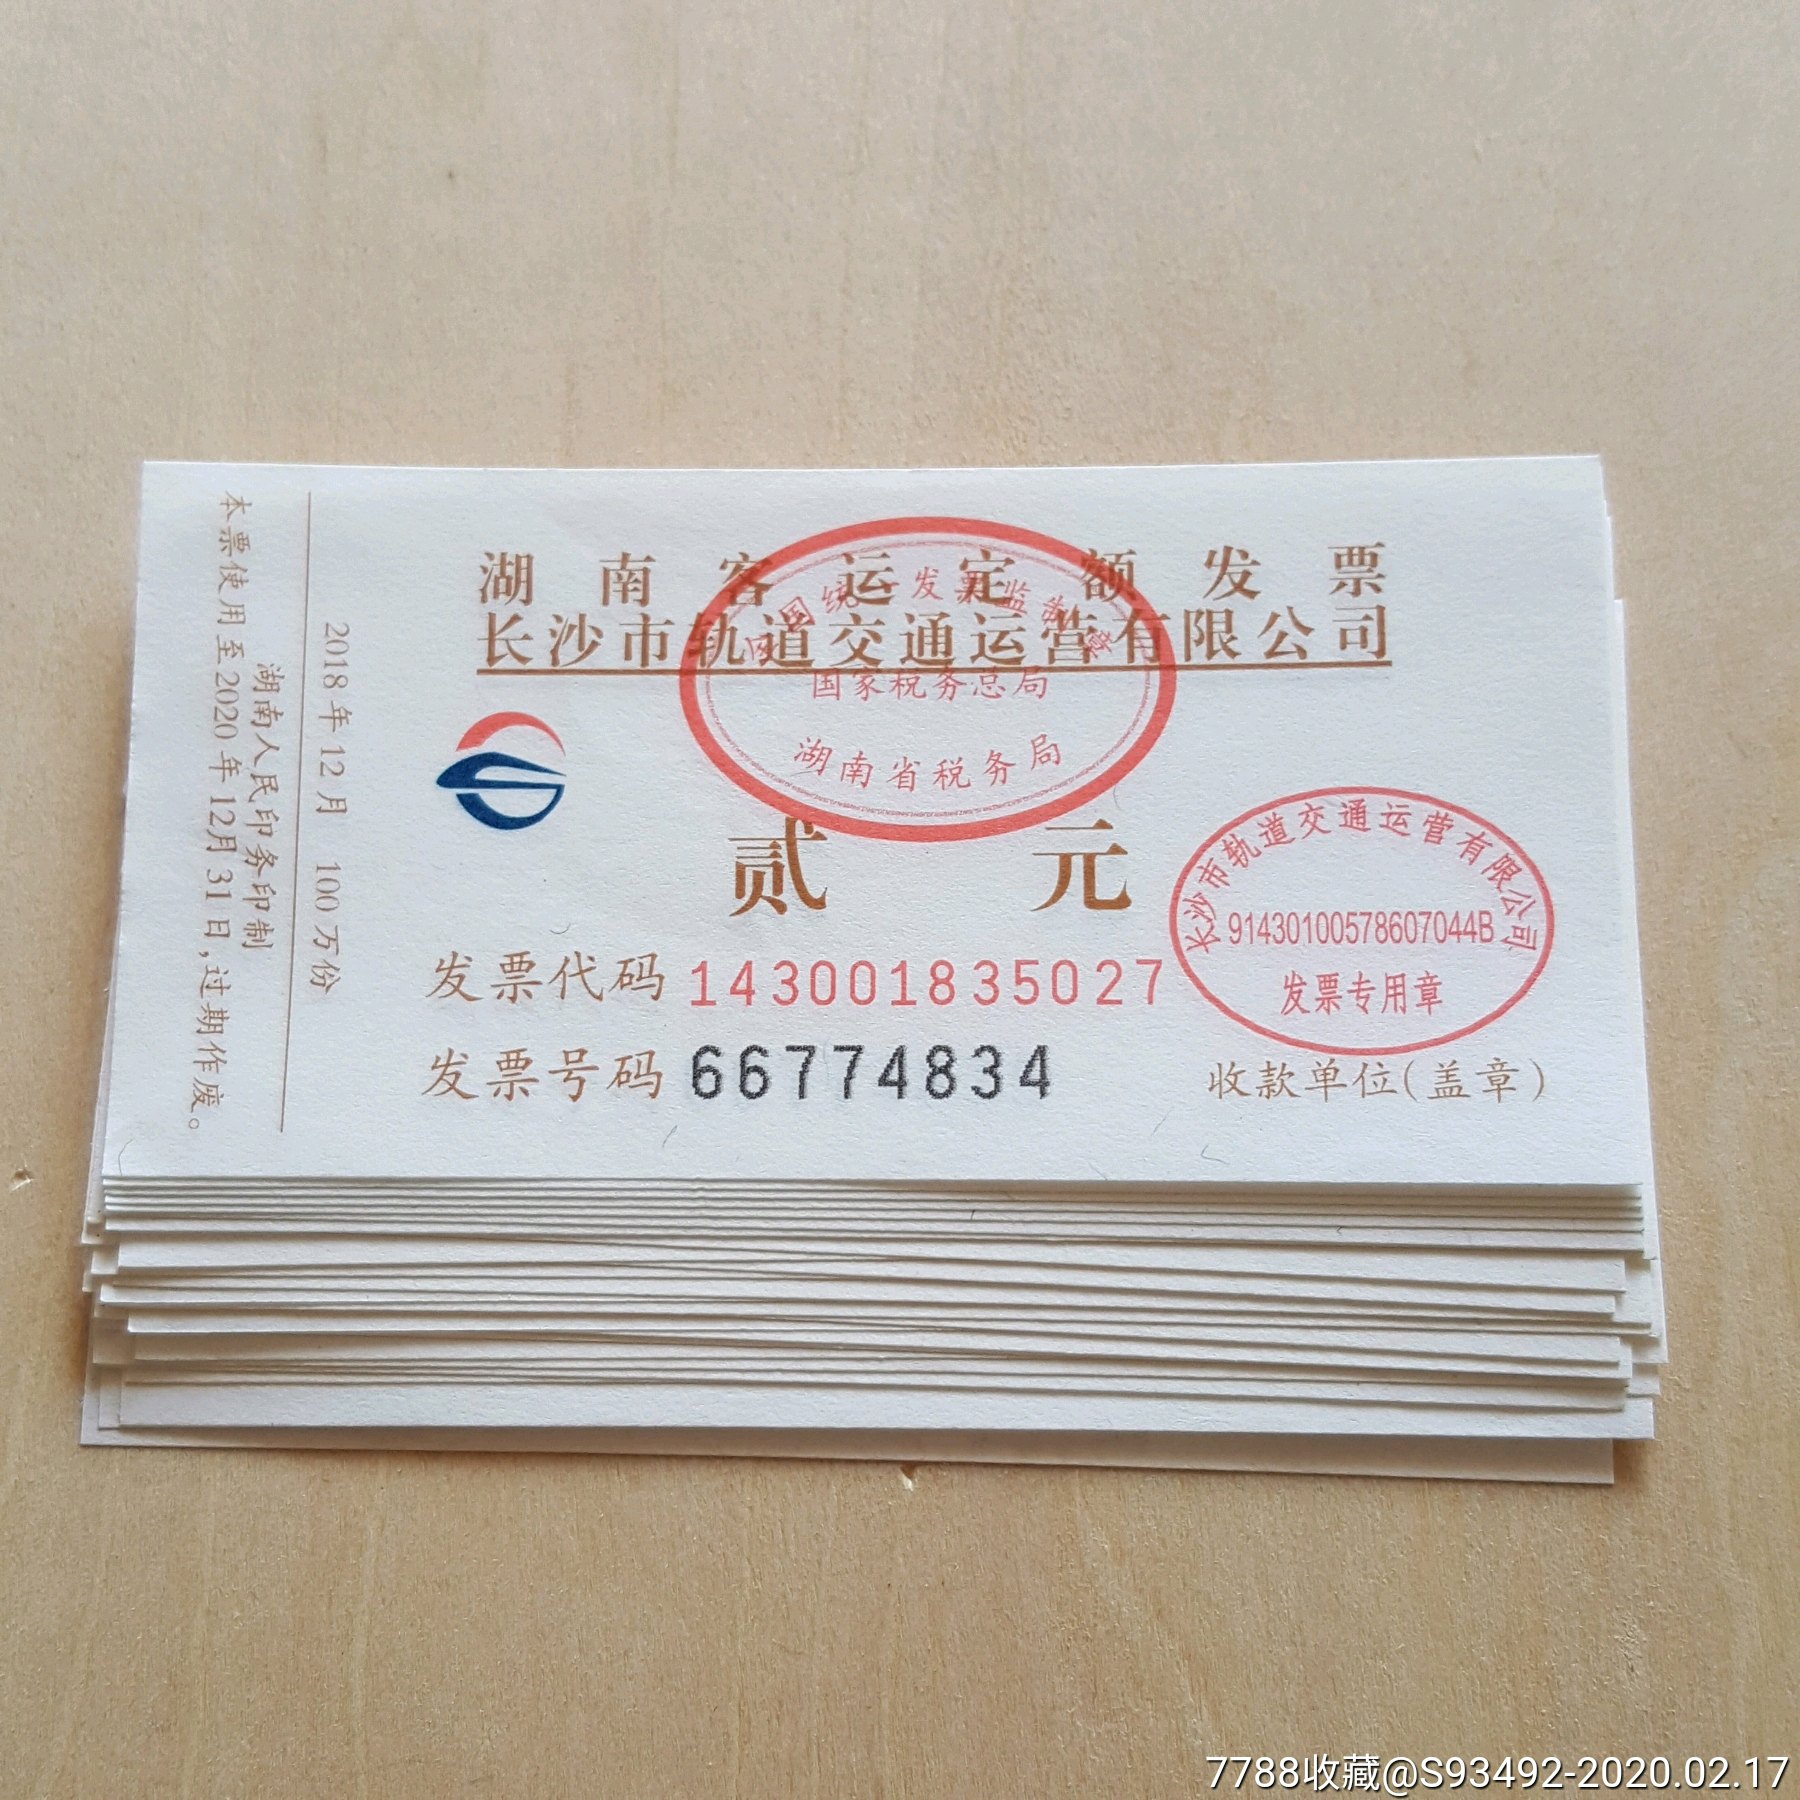 长沙地铁票2张合售/仅供收藏_价格1.